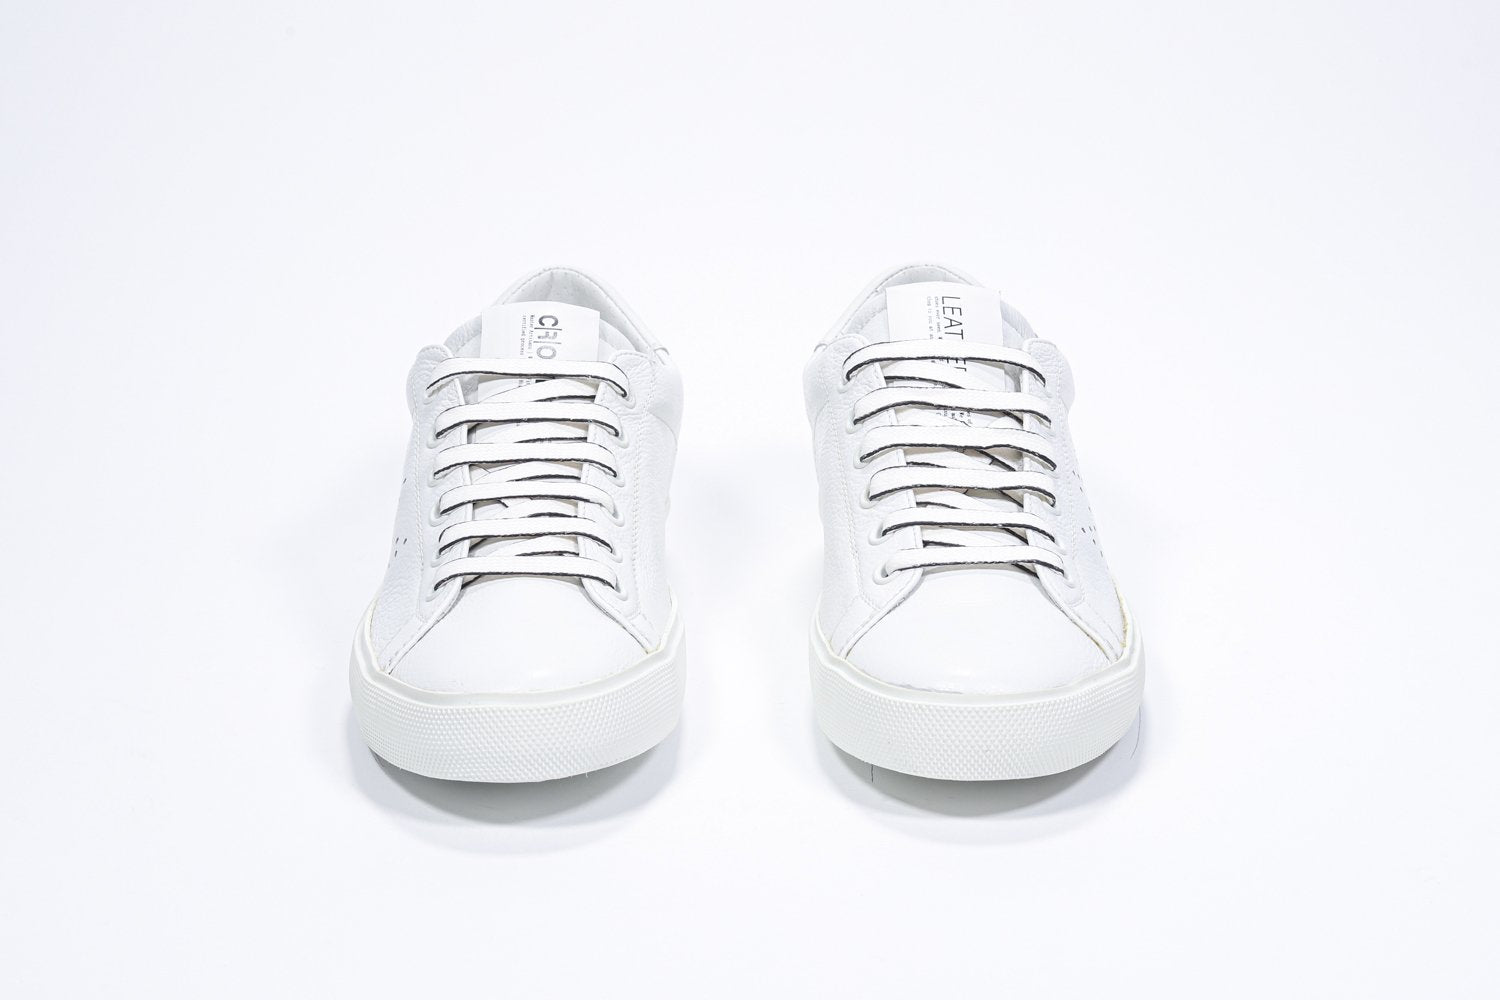 Vue de face de la chaussure blanche sneaker avec le logo perforé de la couronne sur la tige. Tige en cuir et semelle en caoutchouc blanc.